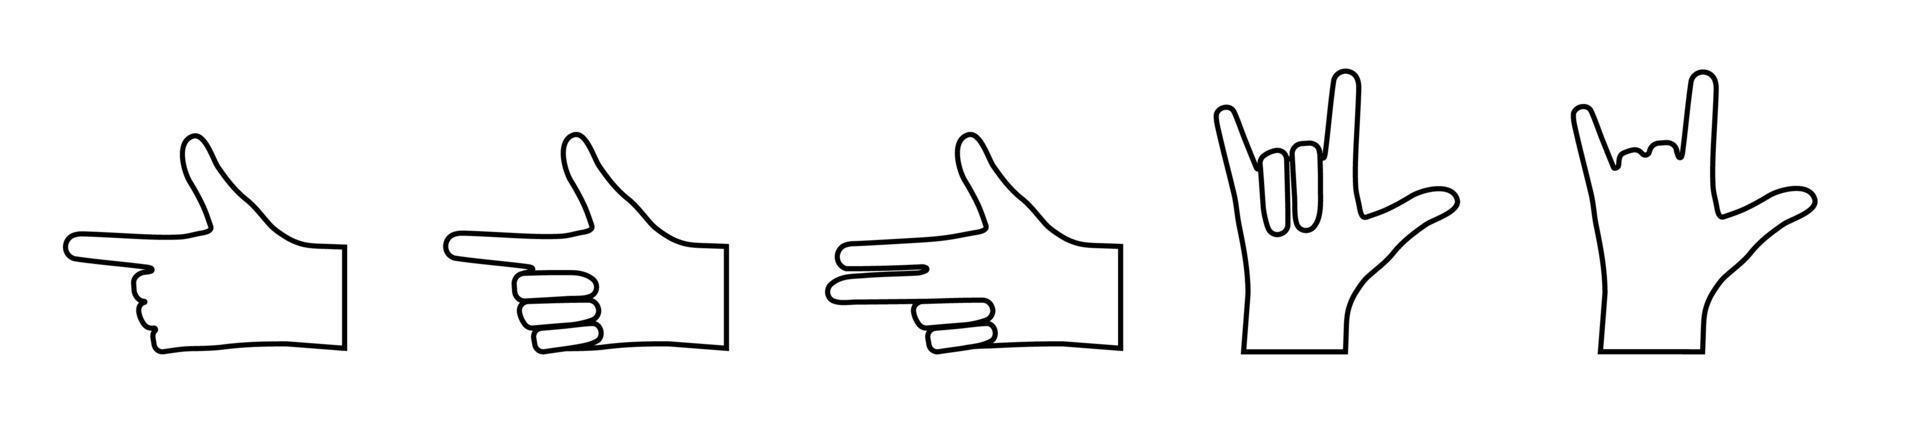 conjunto de gestos con las manos con los dedos doblados y apuntando. iconos en un estilo lineal. gesticulación. vector sobre un fondo blanco